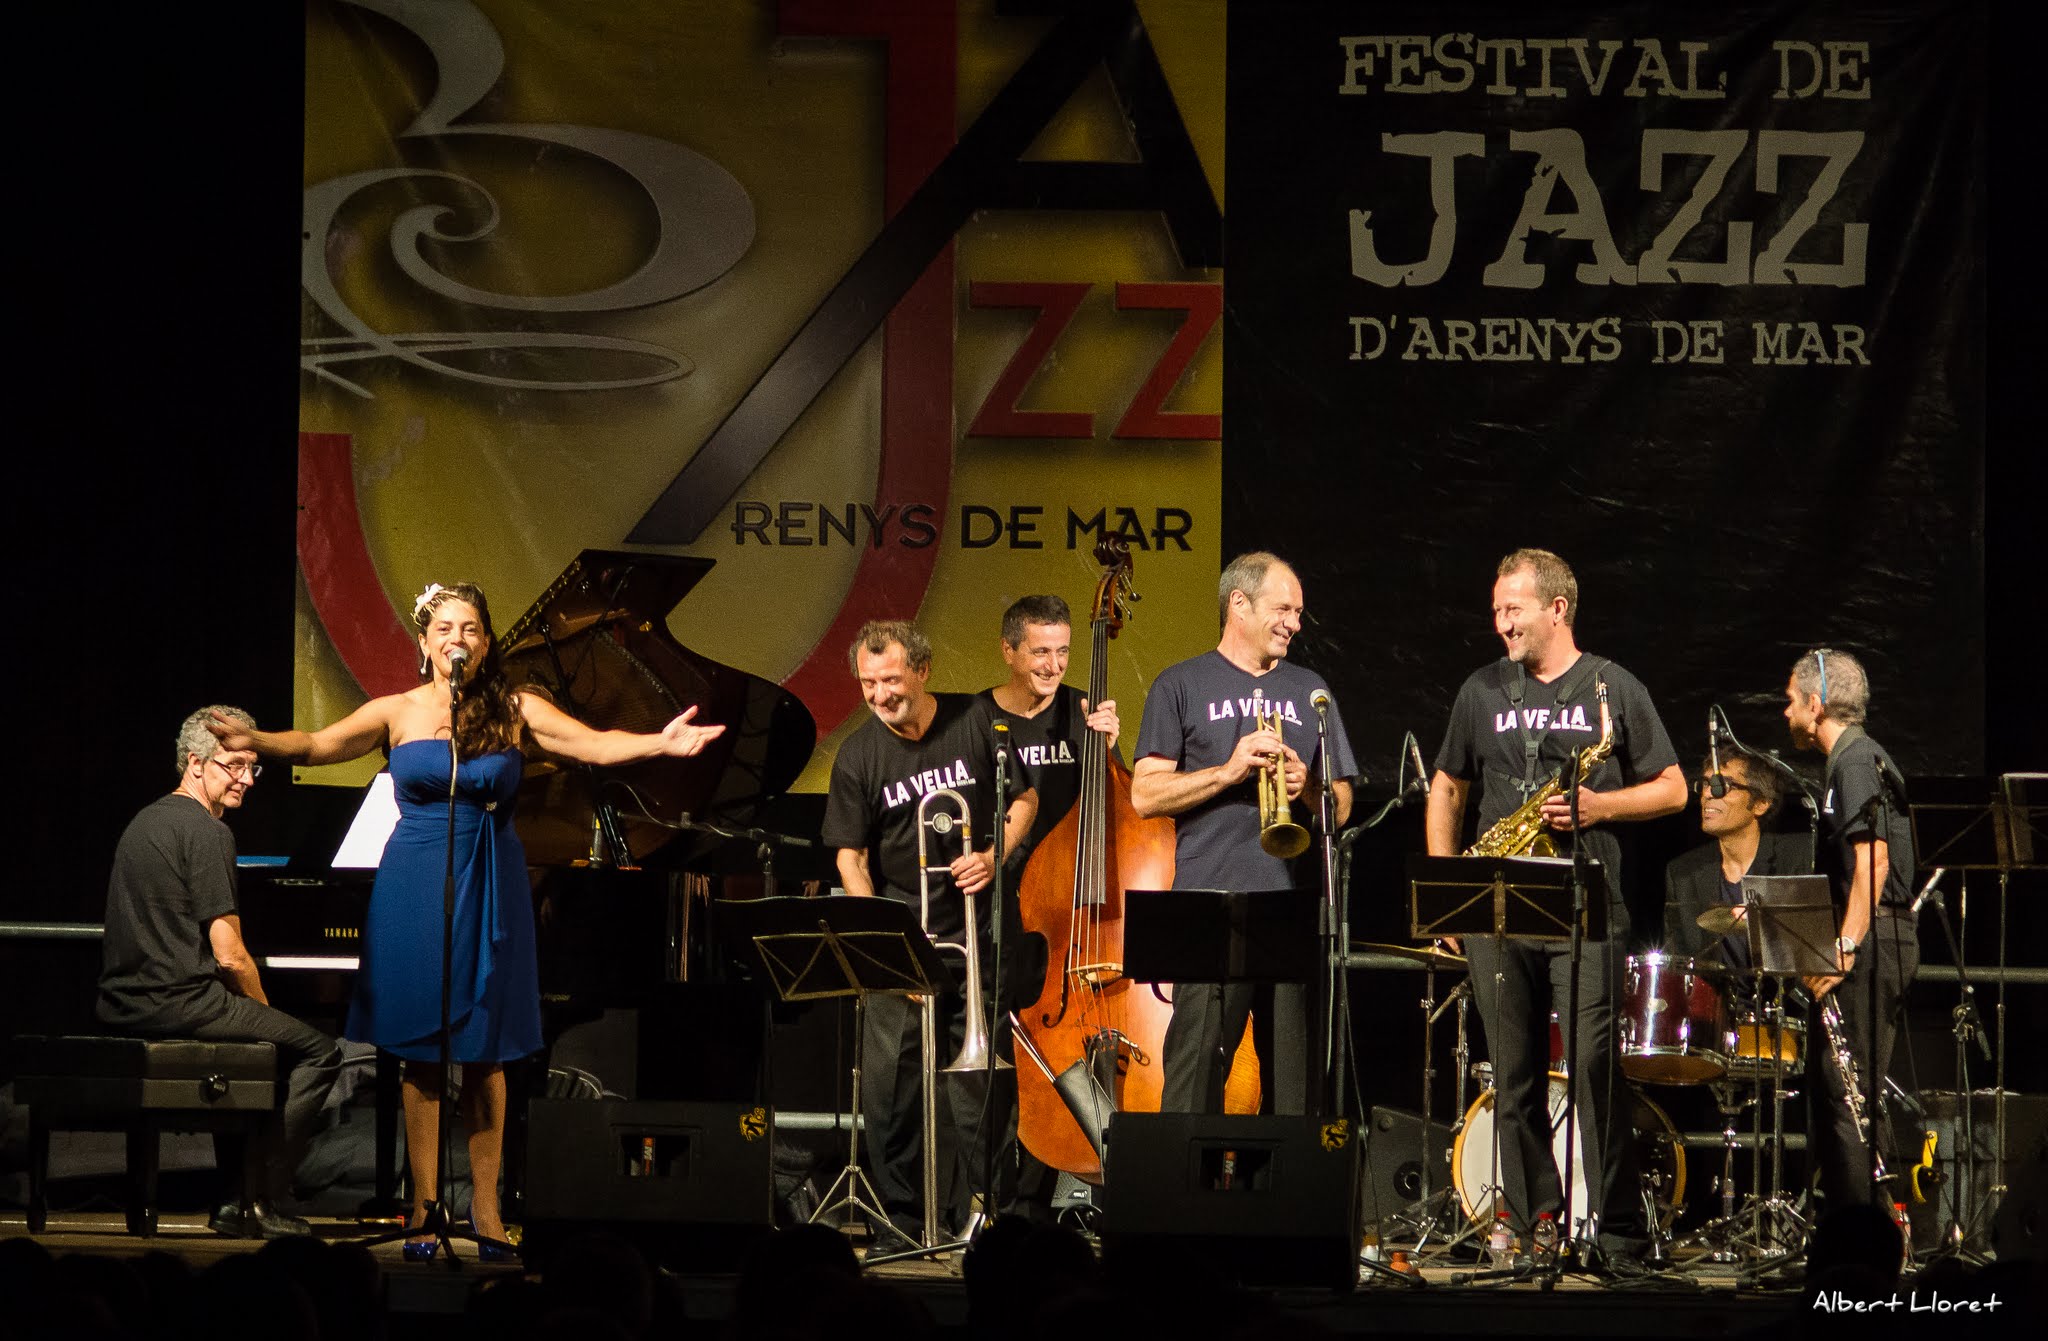 Imatges del 25 Festival de Jazz d'Arenys de Mar - 2016 - Foto 65347505